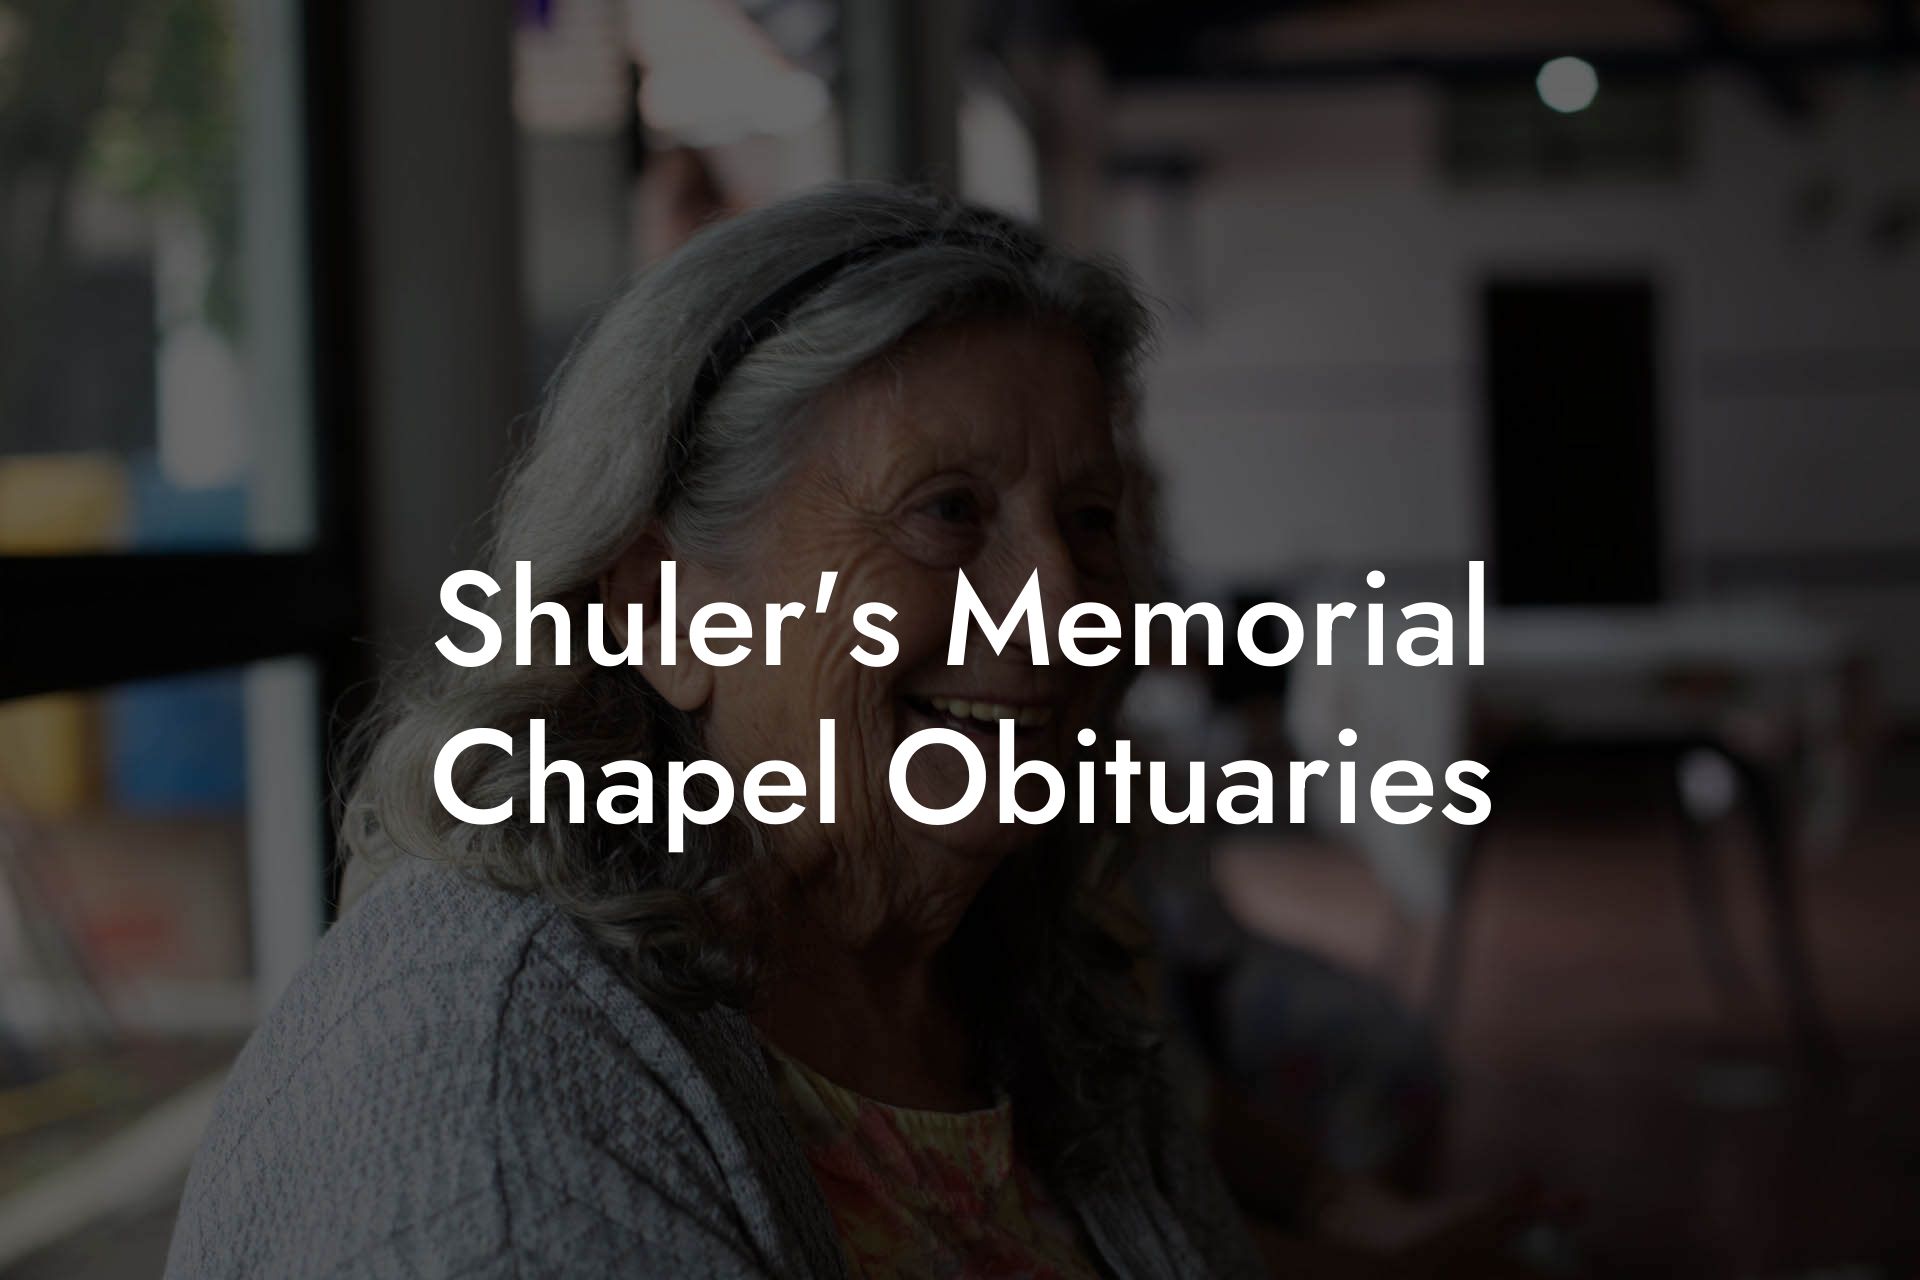 Shuler's Memorial Chapel Obituaries